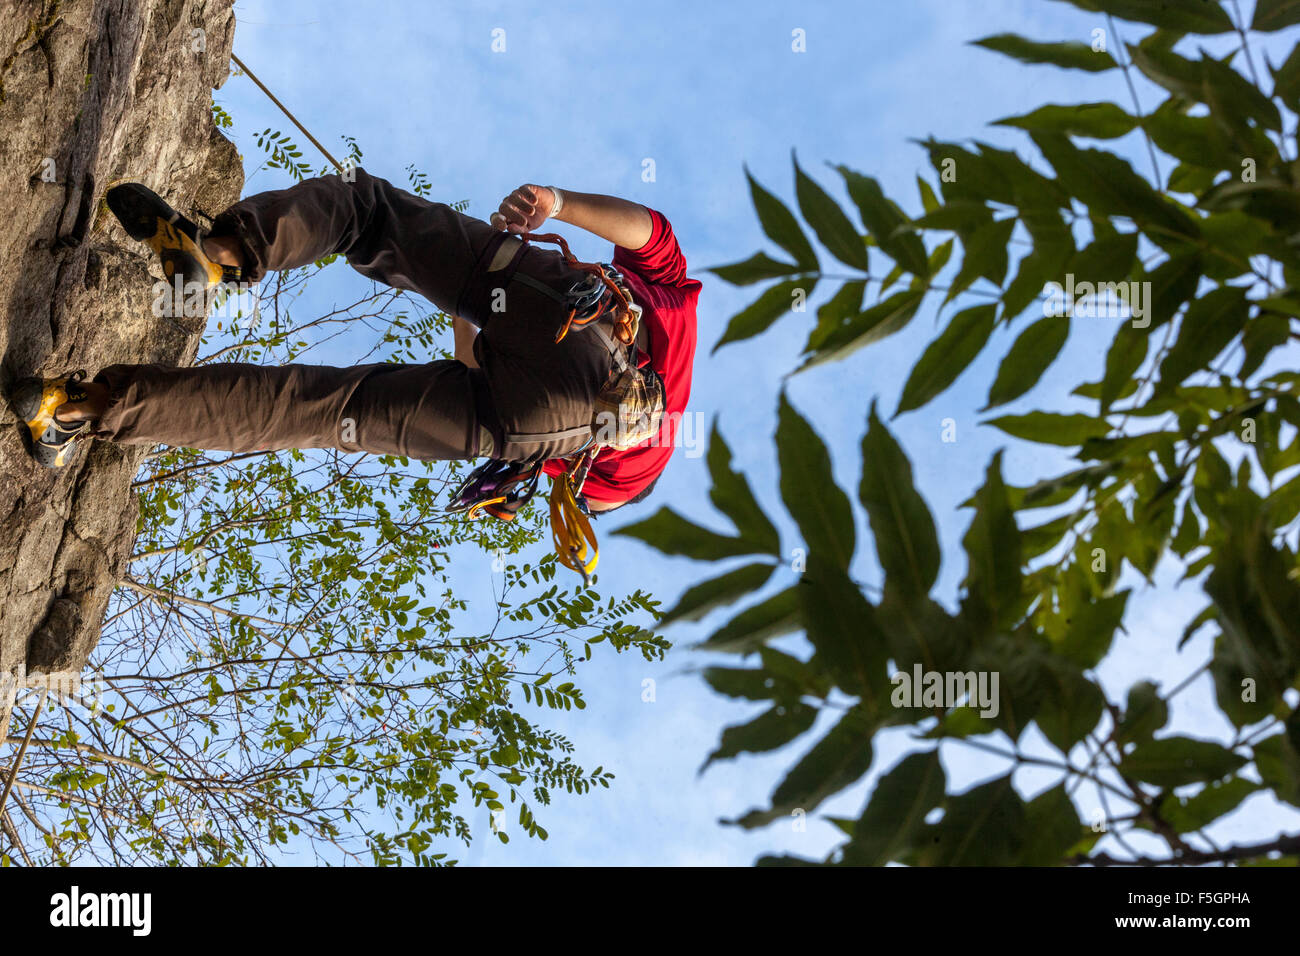 L'homme, Climber climbing up the rock face, République Tchèque Banque D'Images